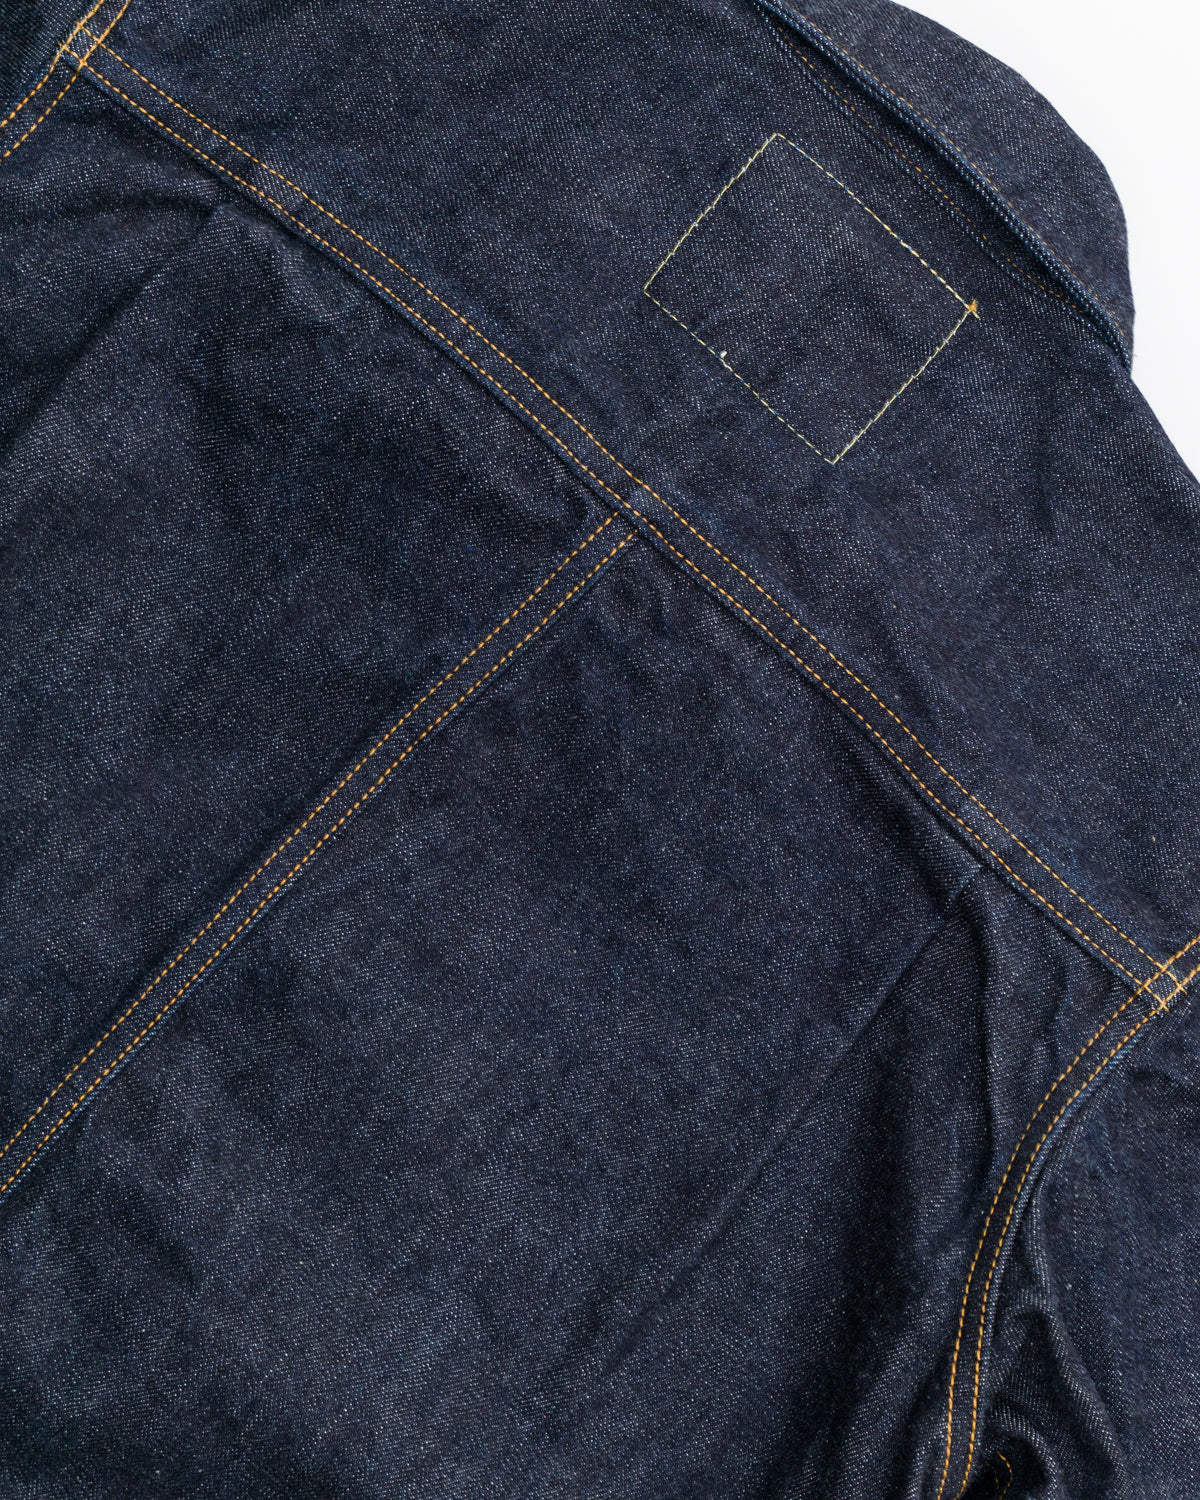 03-181 - Classic Denim Jacket - Indigo O/W